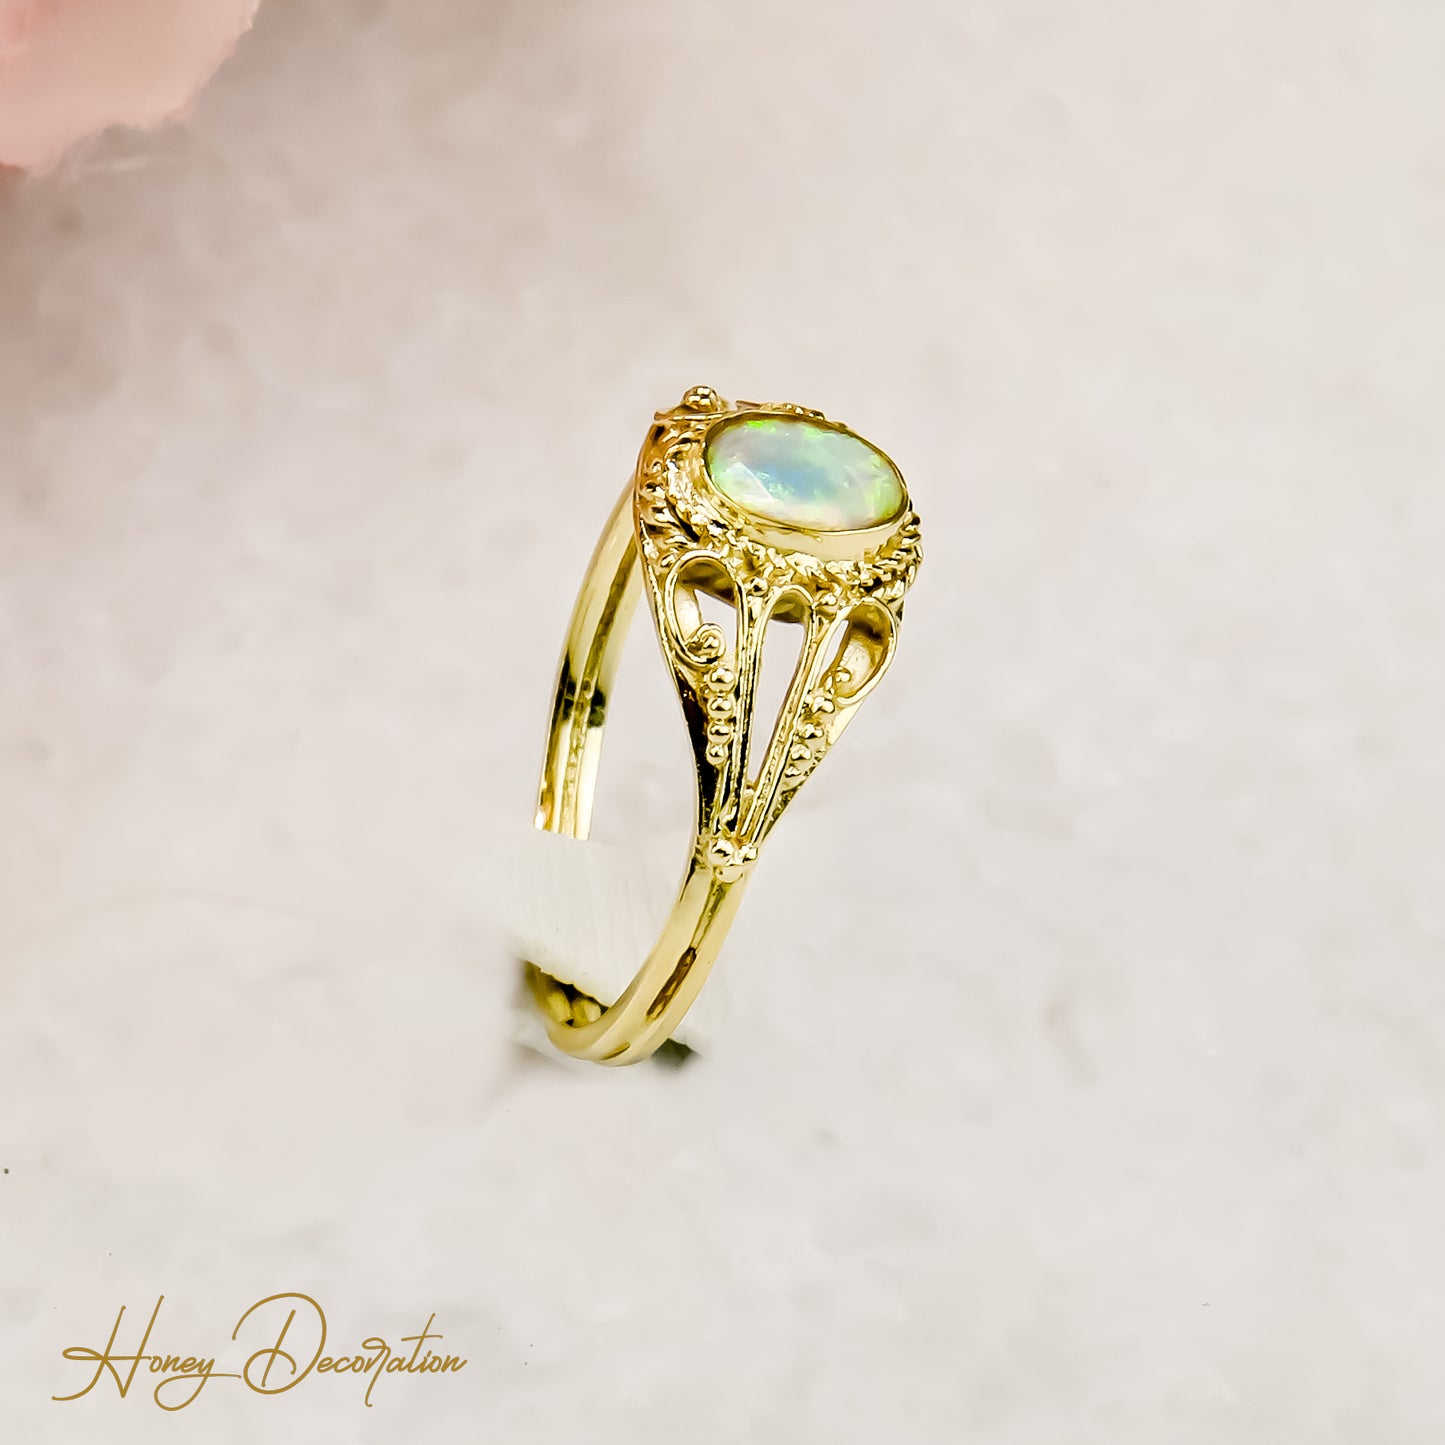 Opal ring made of 14 karat gold